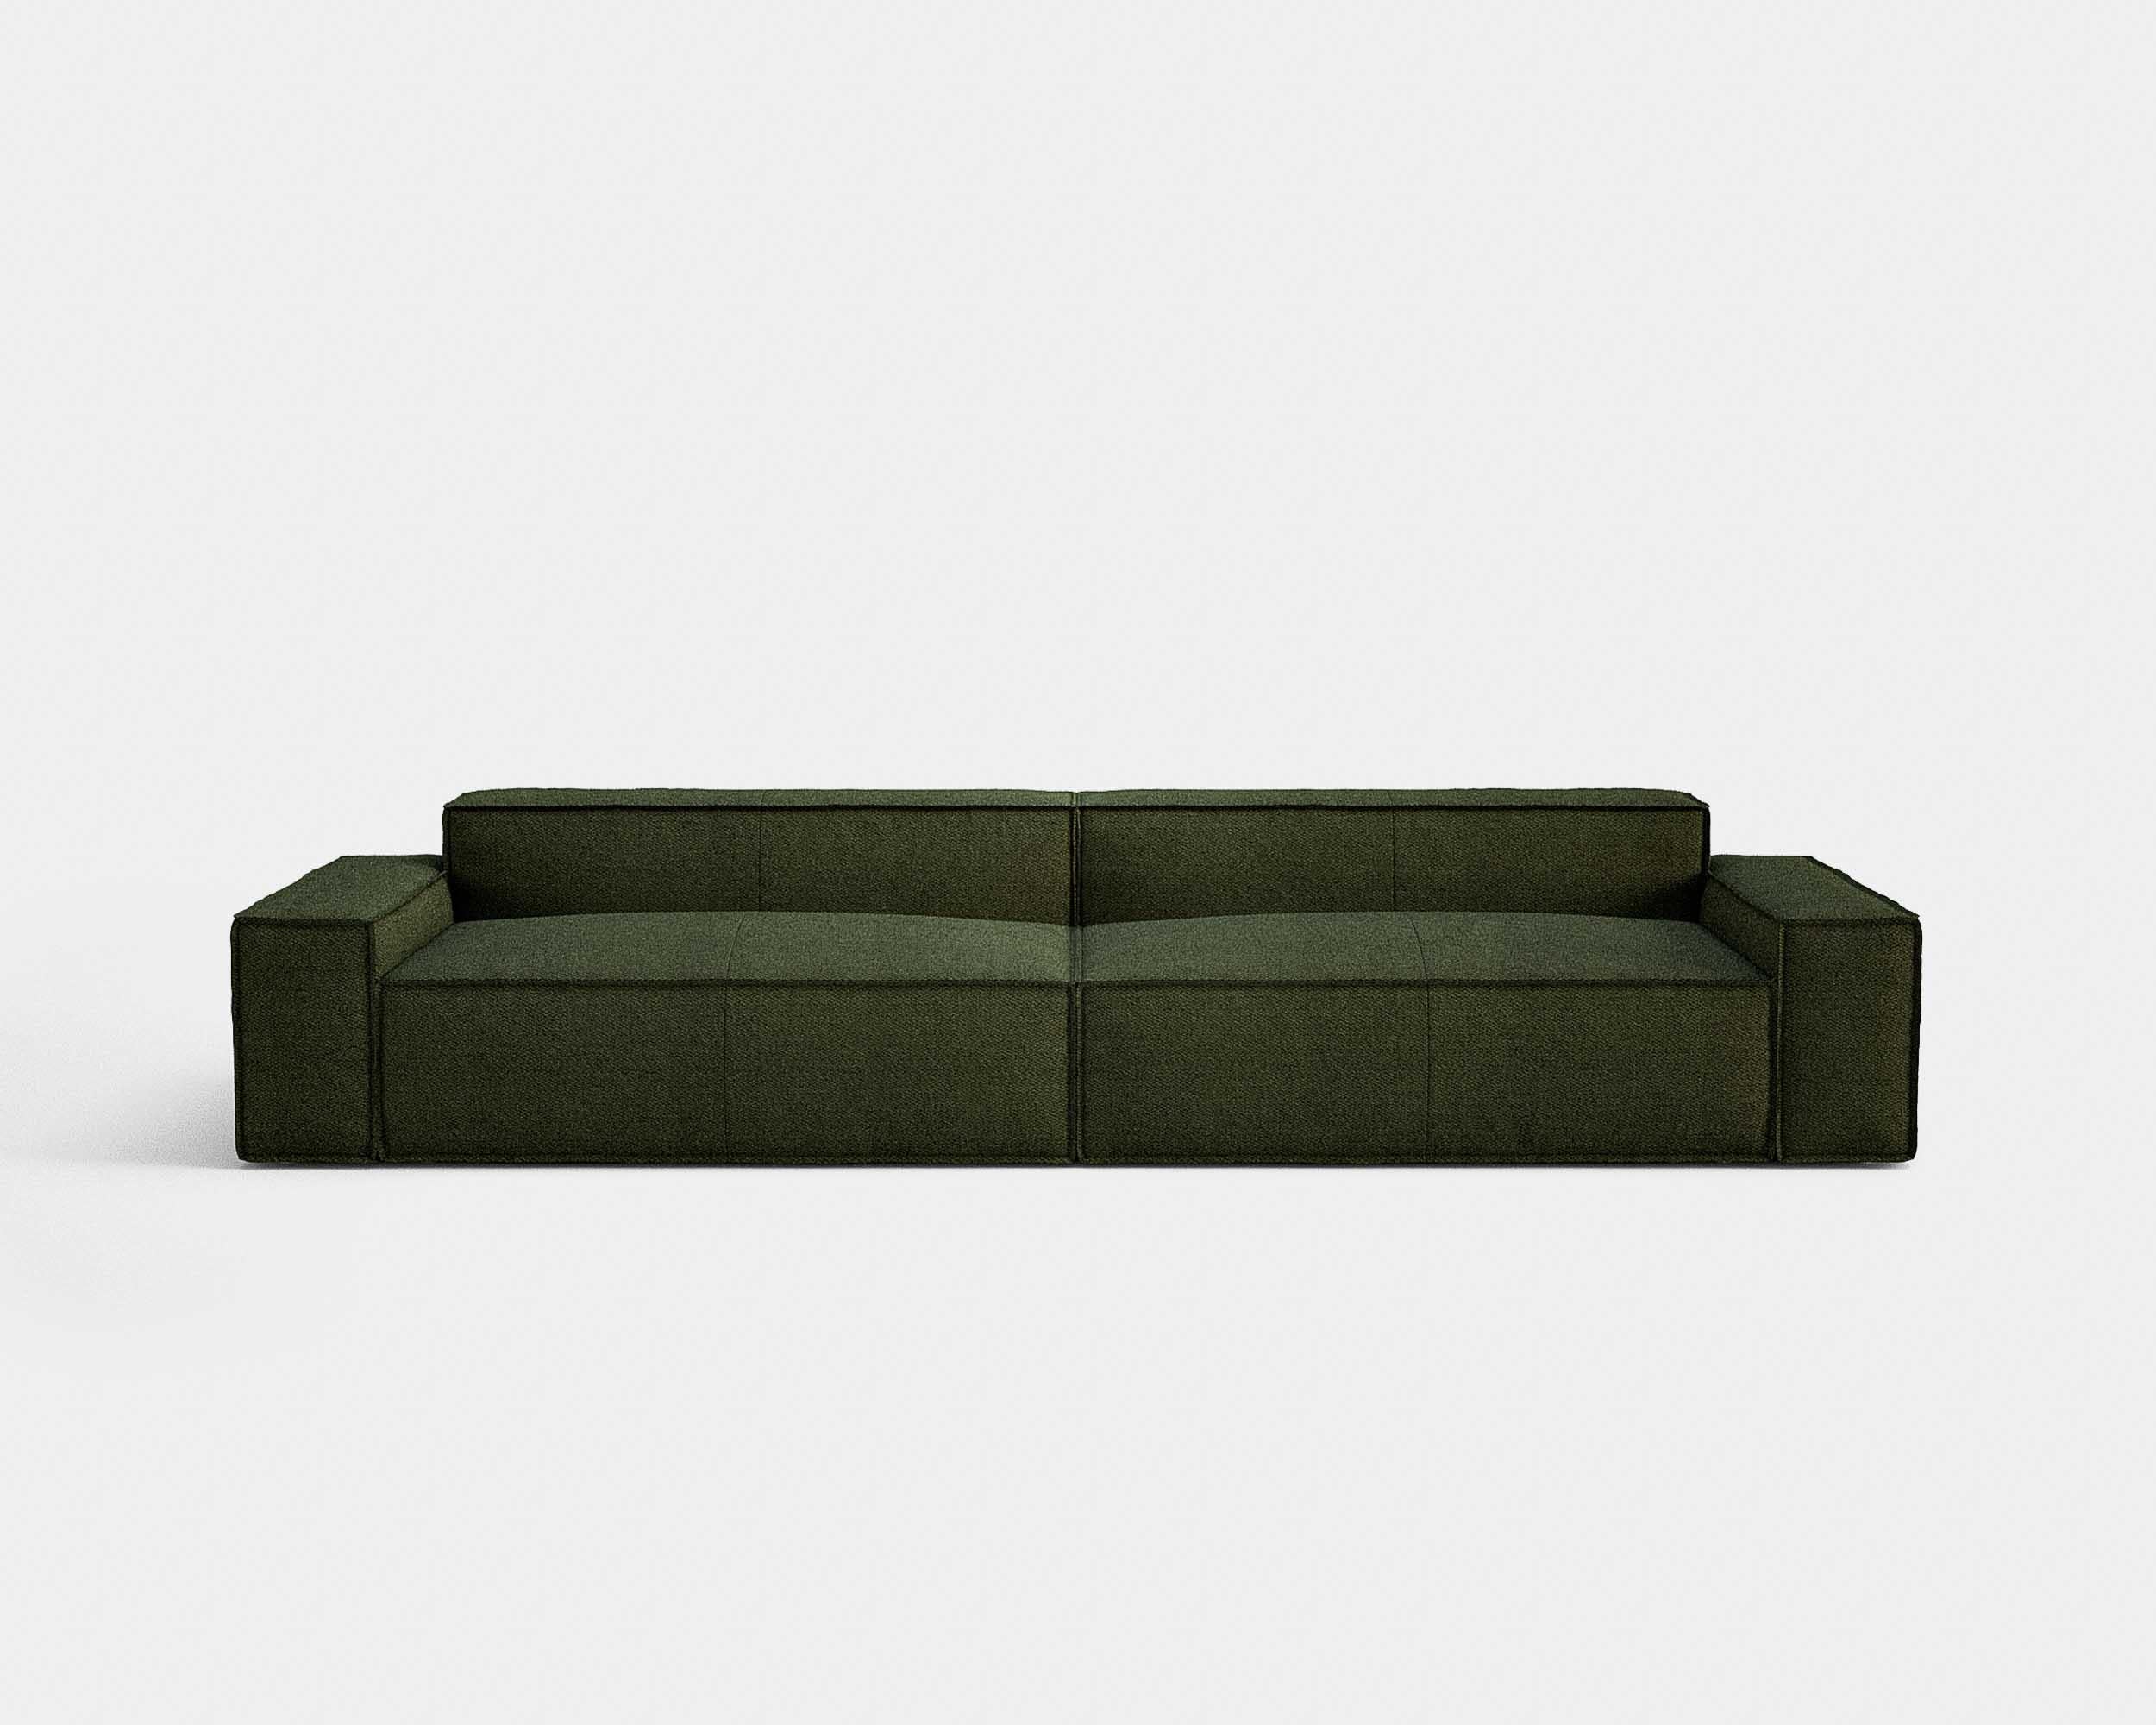 Italian Contemporary Sofa 'Davis' by Amura Lab, Brera 850 - Brown 04 For Sale